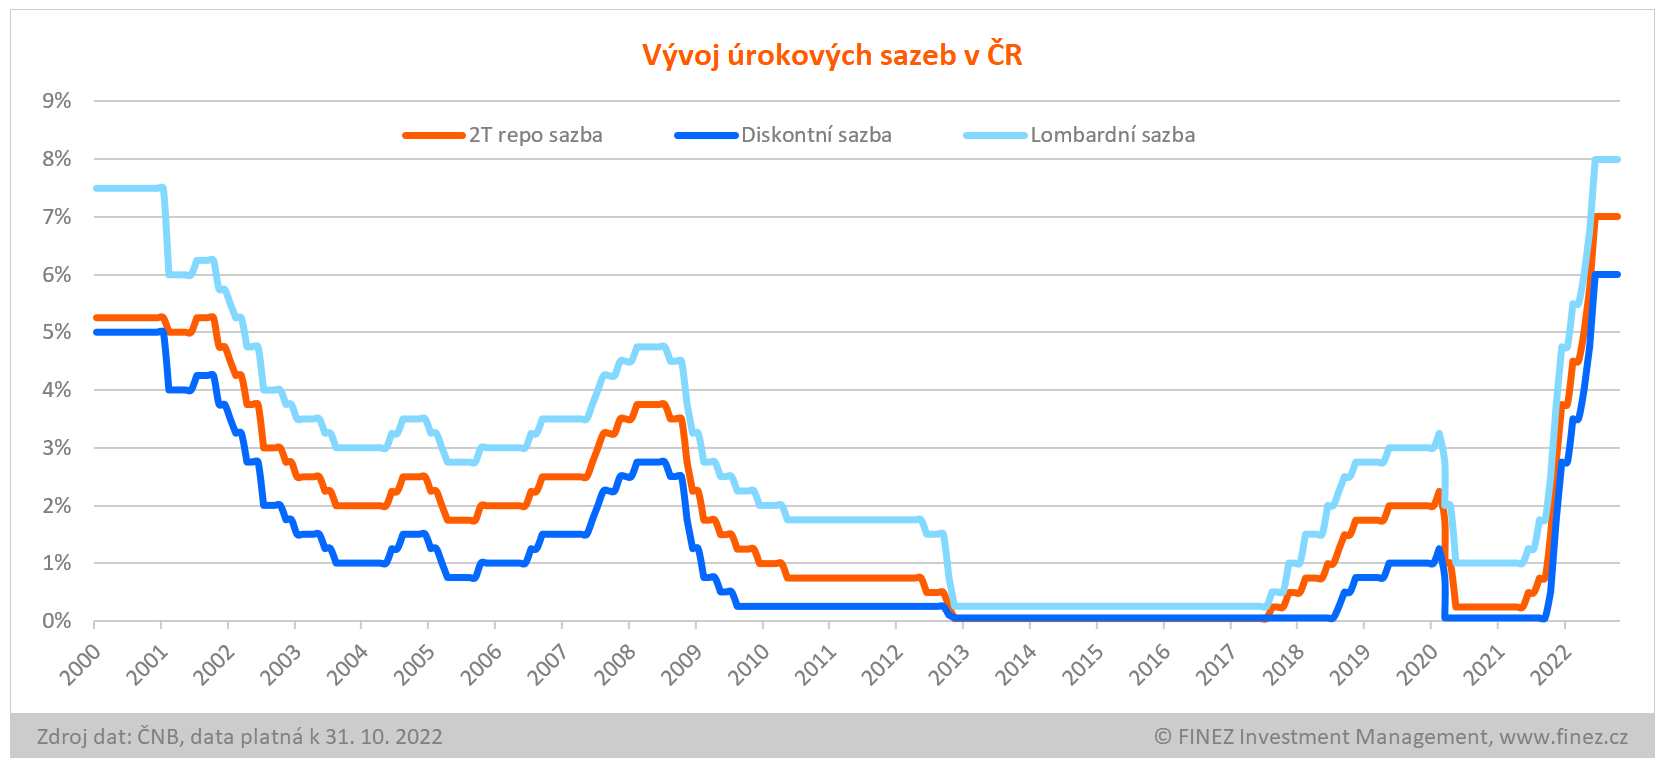 Úrokové sazby v ČR v letech 2000-2022